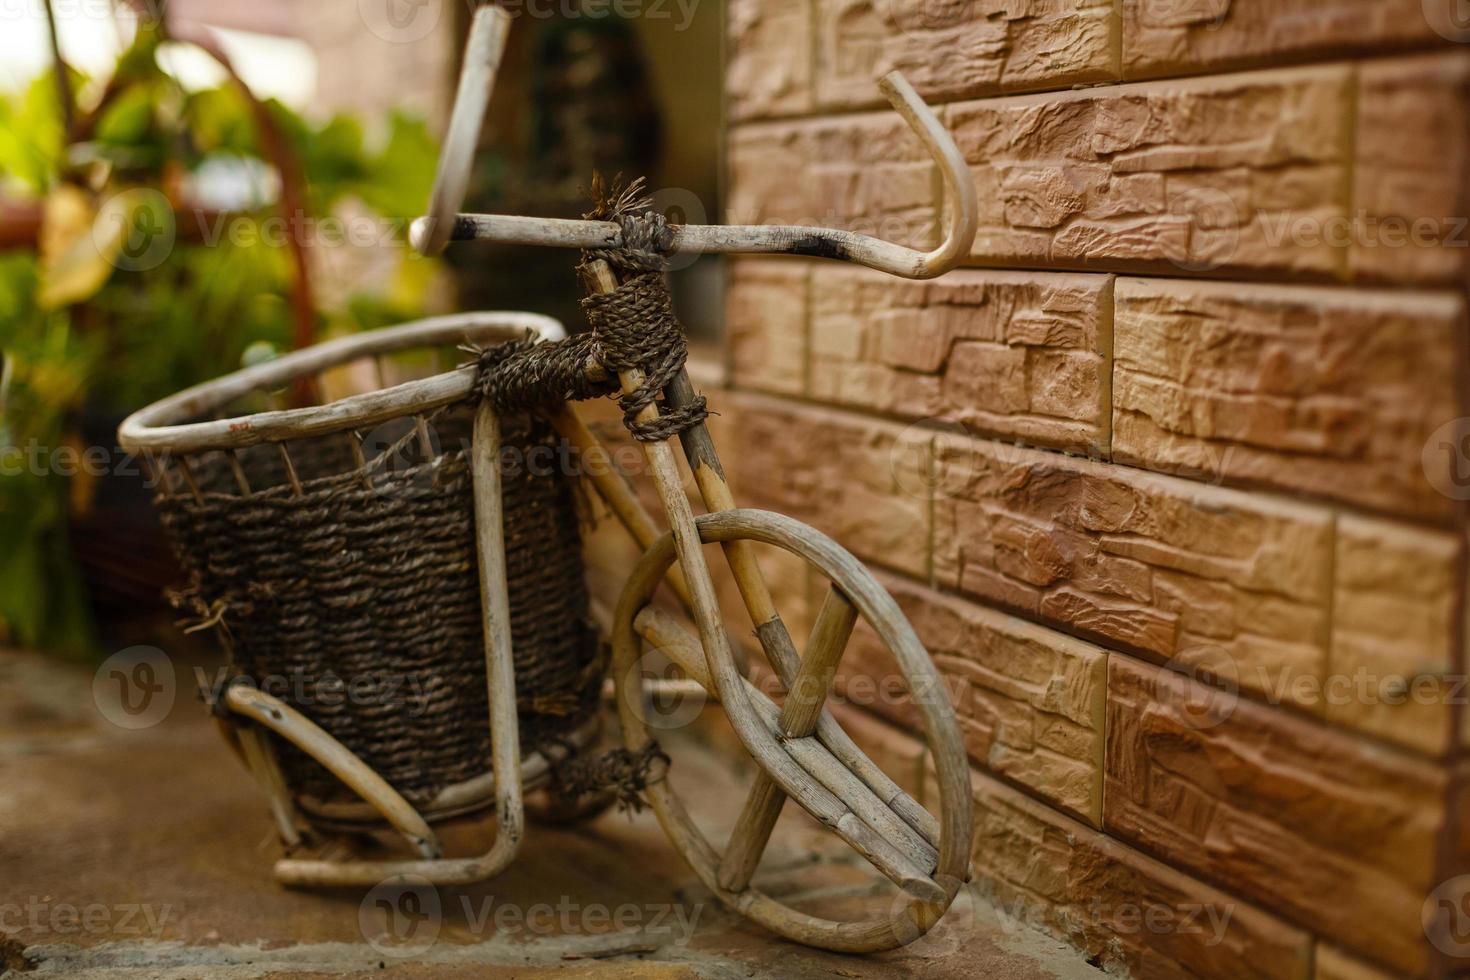 Blume im Korb mit alten alten Fahrrädern in der Nähe von alten hölzernen Sommerstraßencafés in Europa foto